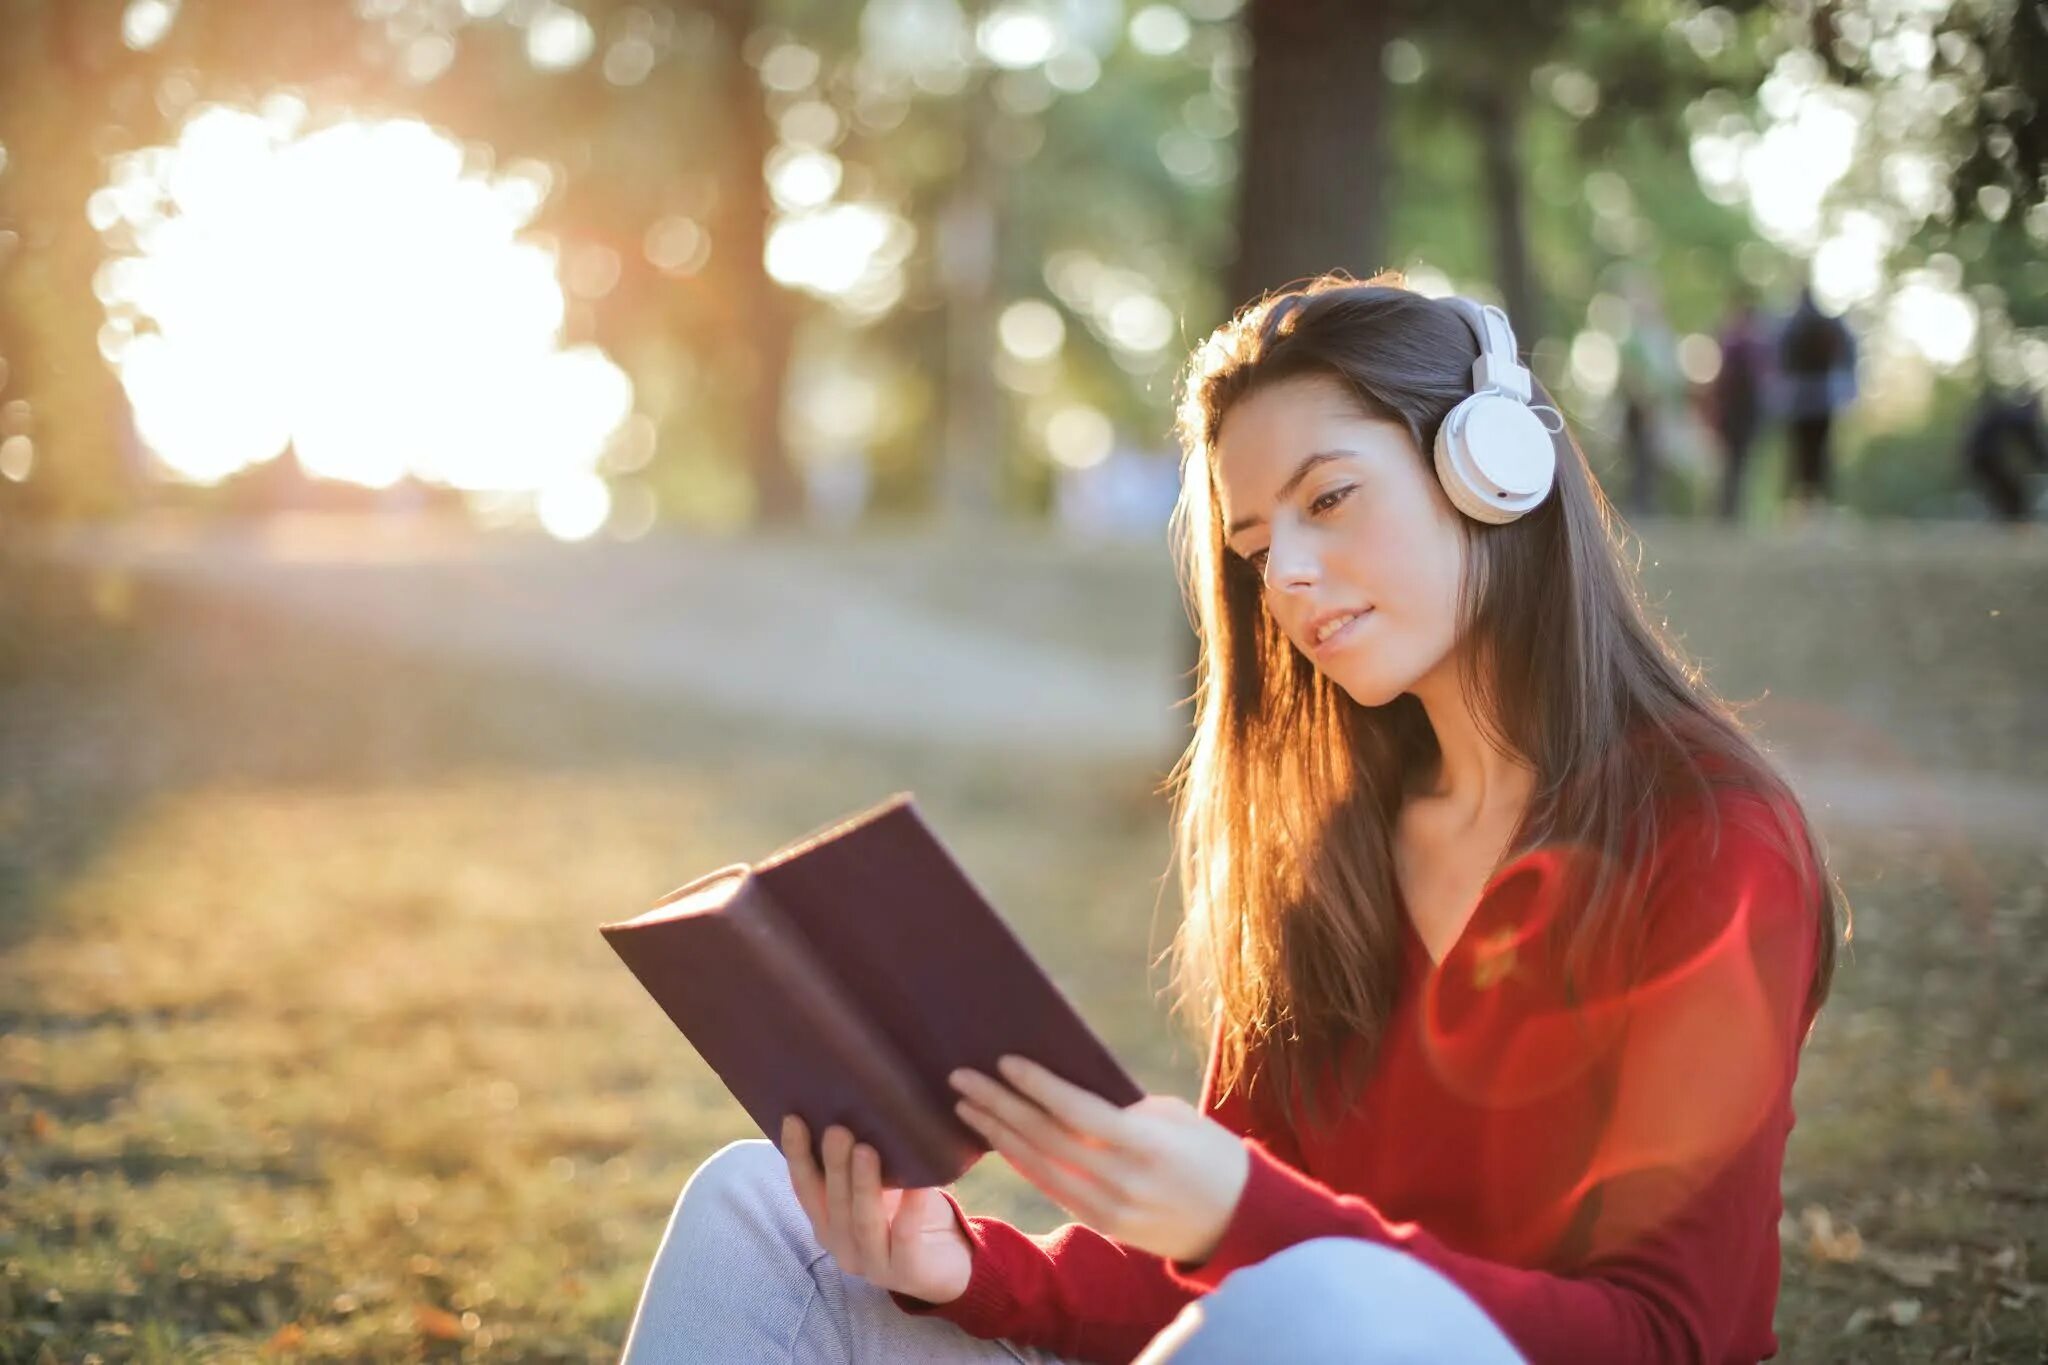 I am read books. Чтение в наушниках. Чтение с наушниками. Читать книгу и слушать музыку. Девушка читает и слушает музыку.